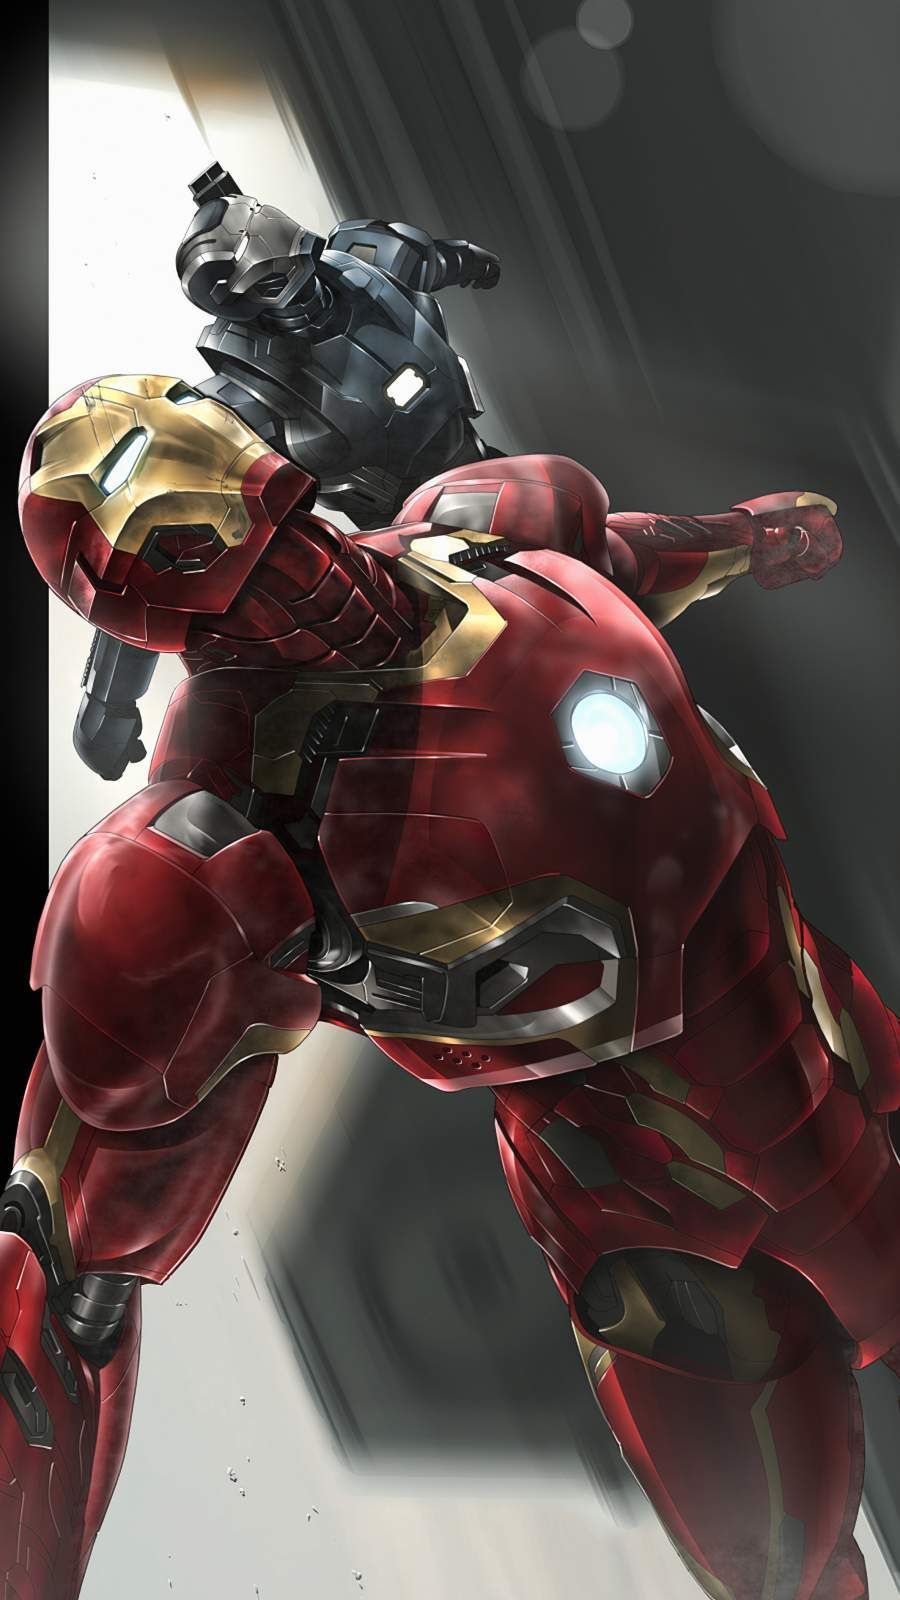 Iron Man War Machine Art iPhone Wallpaper Wallpaper, iPhone Wallpaper. Iron man, Iron man art, Iron man avengers